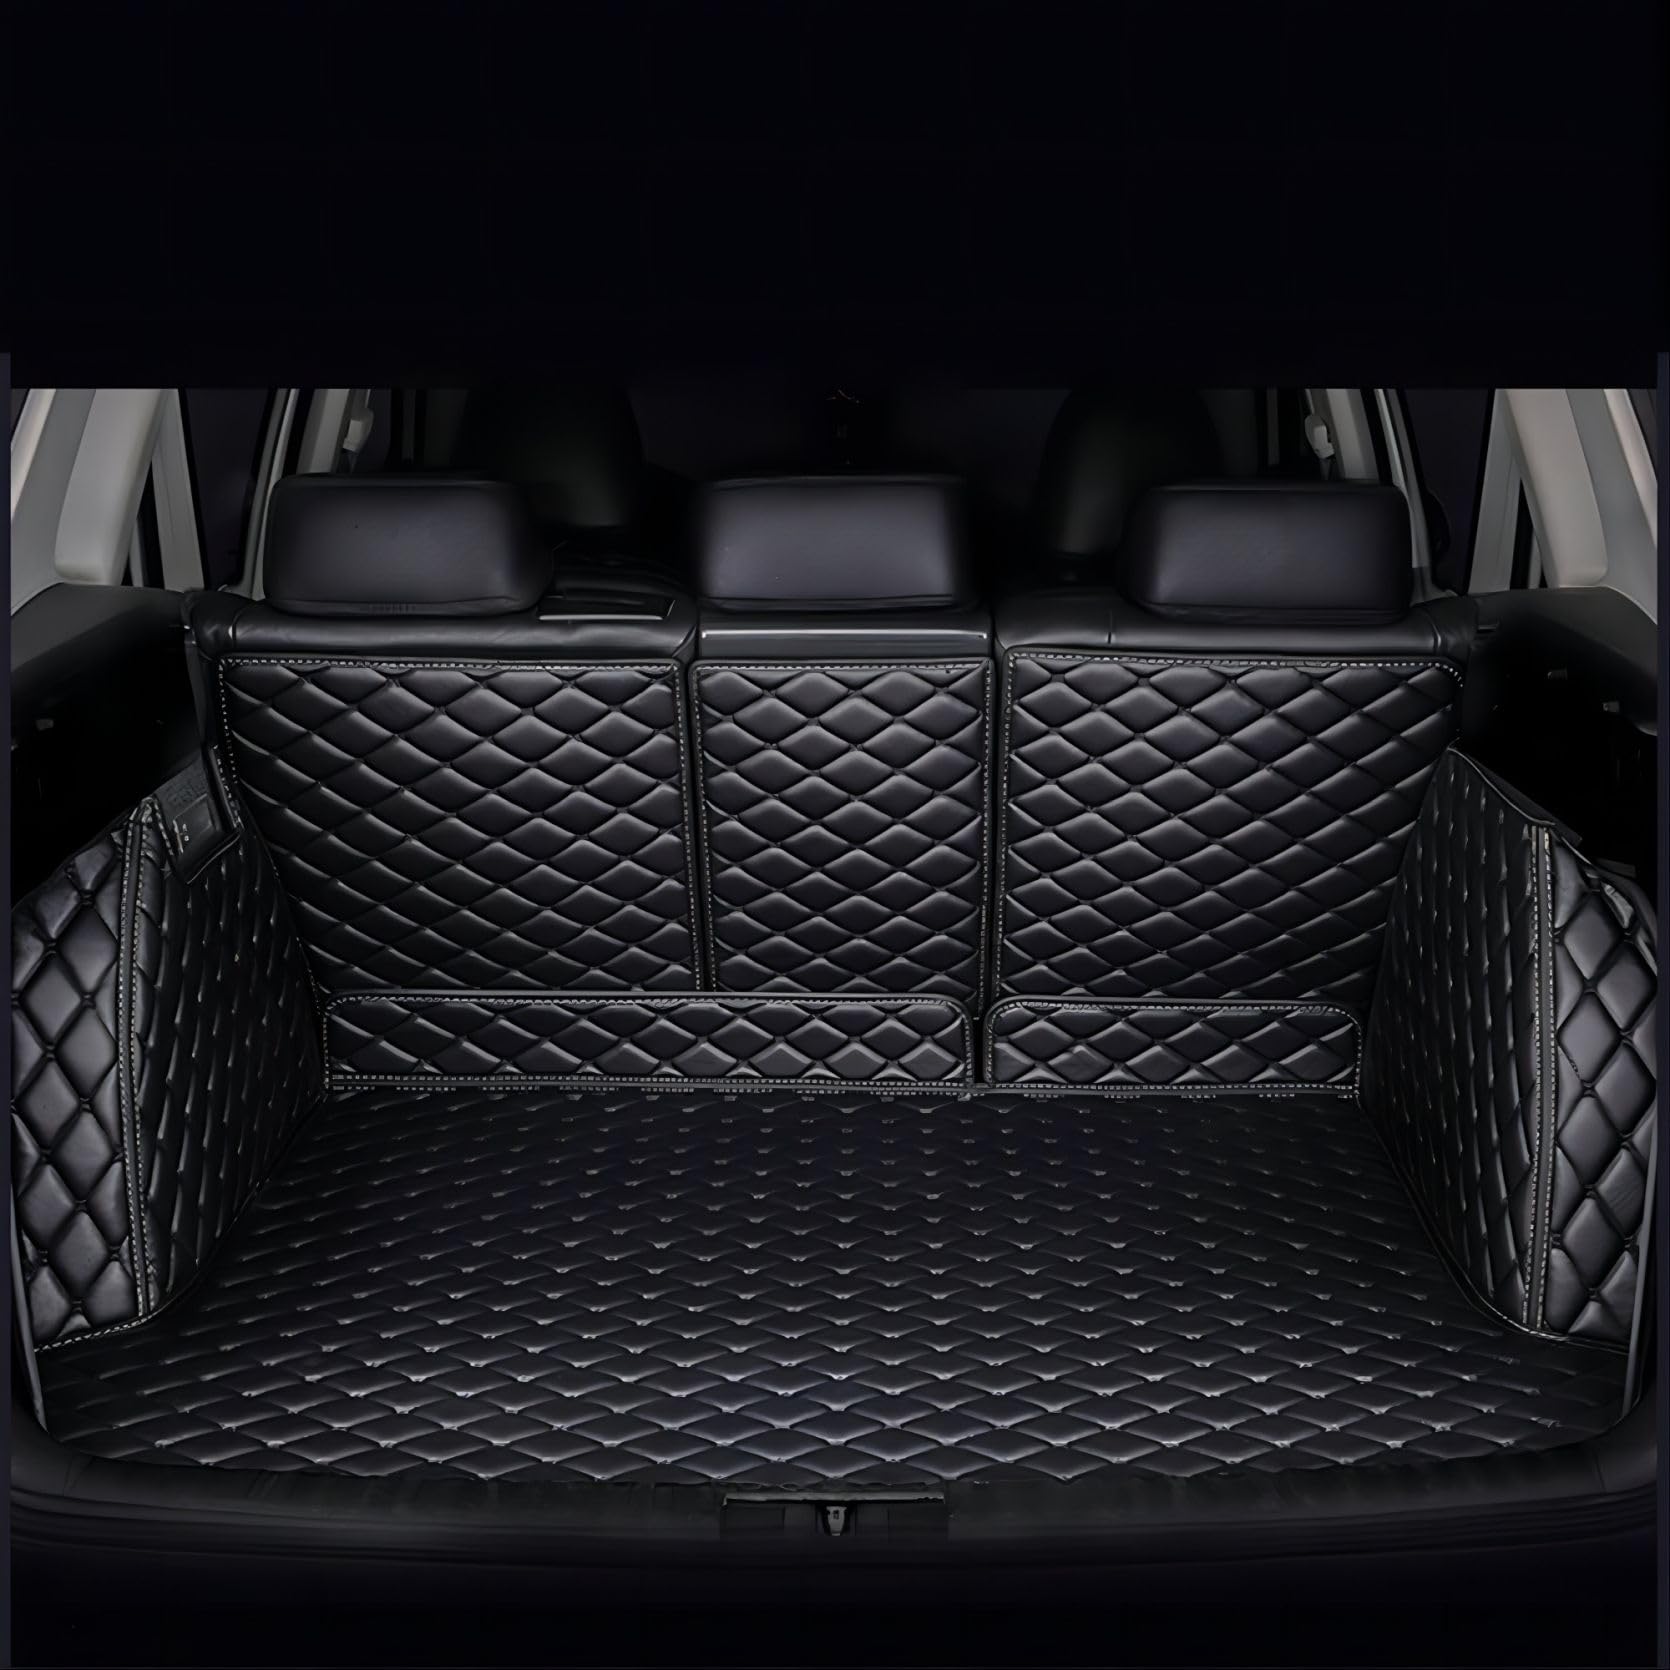 Auto Kofferraummatte für Land Rover Freelander 2 2010-2015, Vollständige Abdeckung Leder Kofferraumwanne Schutzmatte Wasserdicht rutschfest Autozubehör,Black von VENYAA